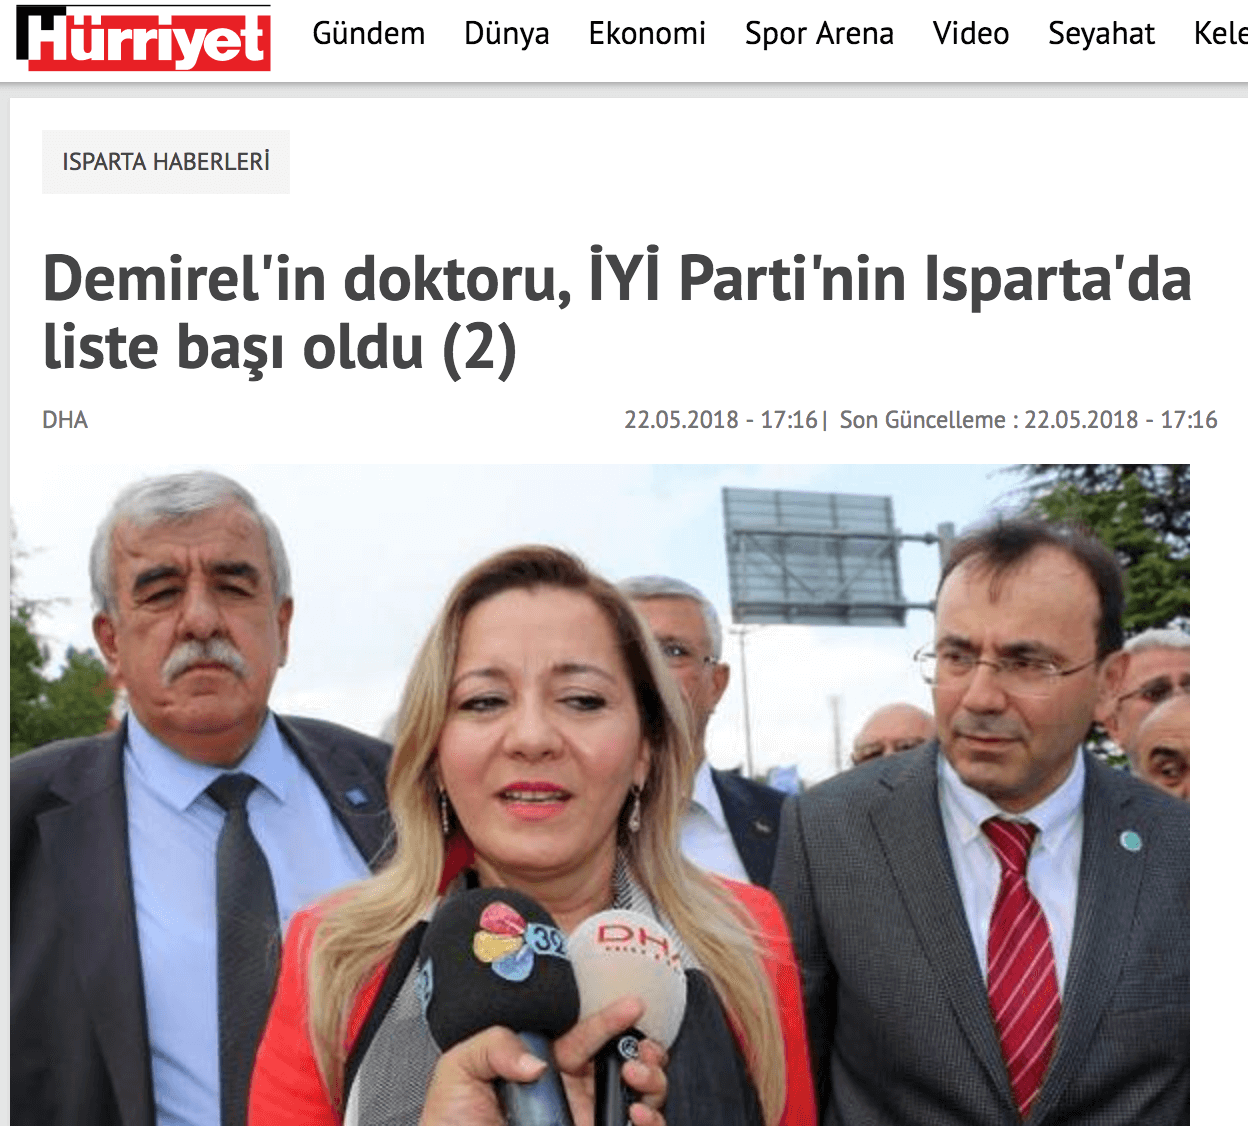 Demirel'in doktoru, İYİ Parti'nin Isparta'da liste başı oldu (2)